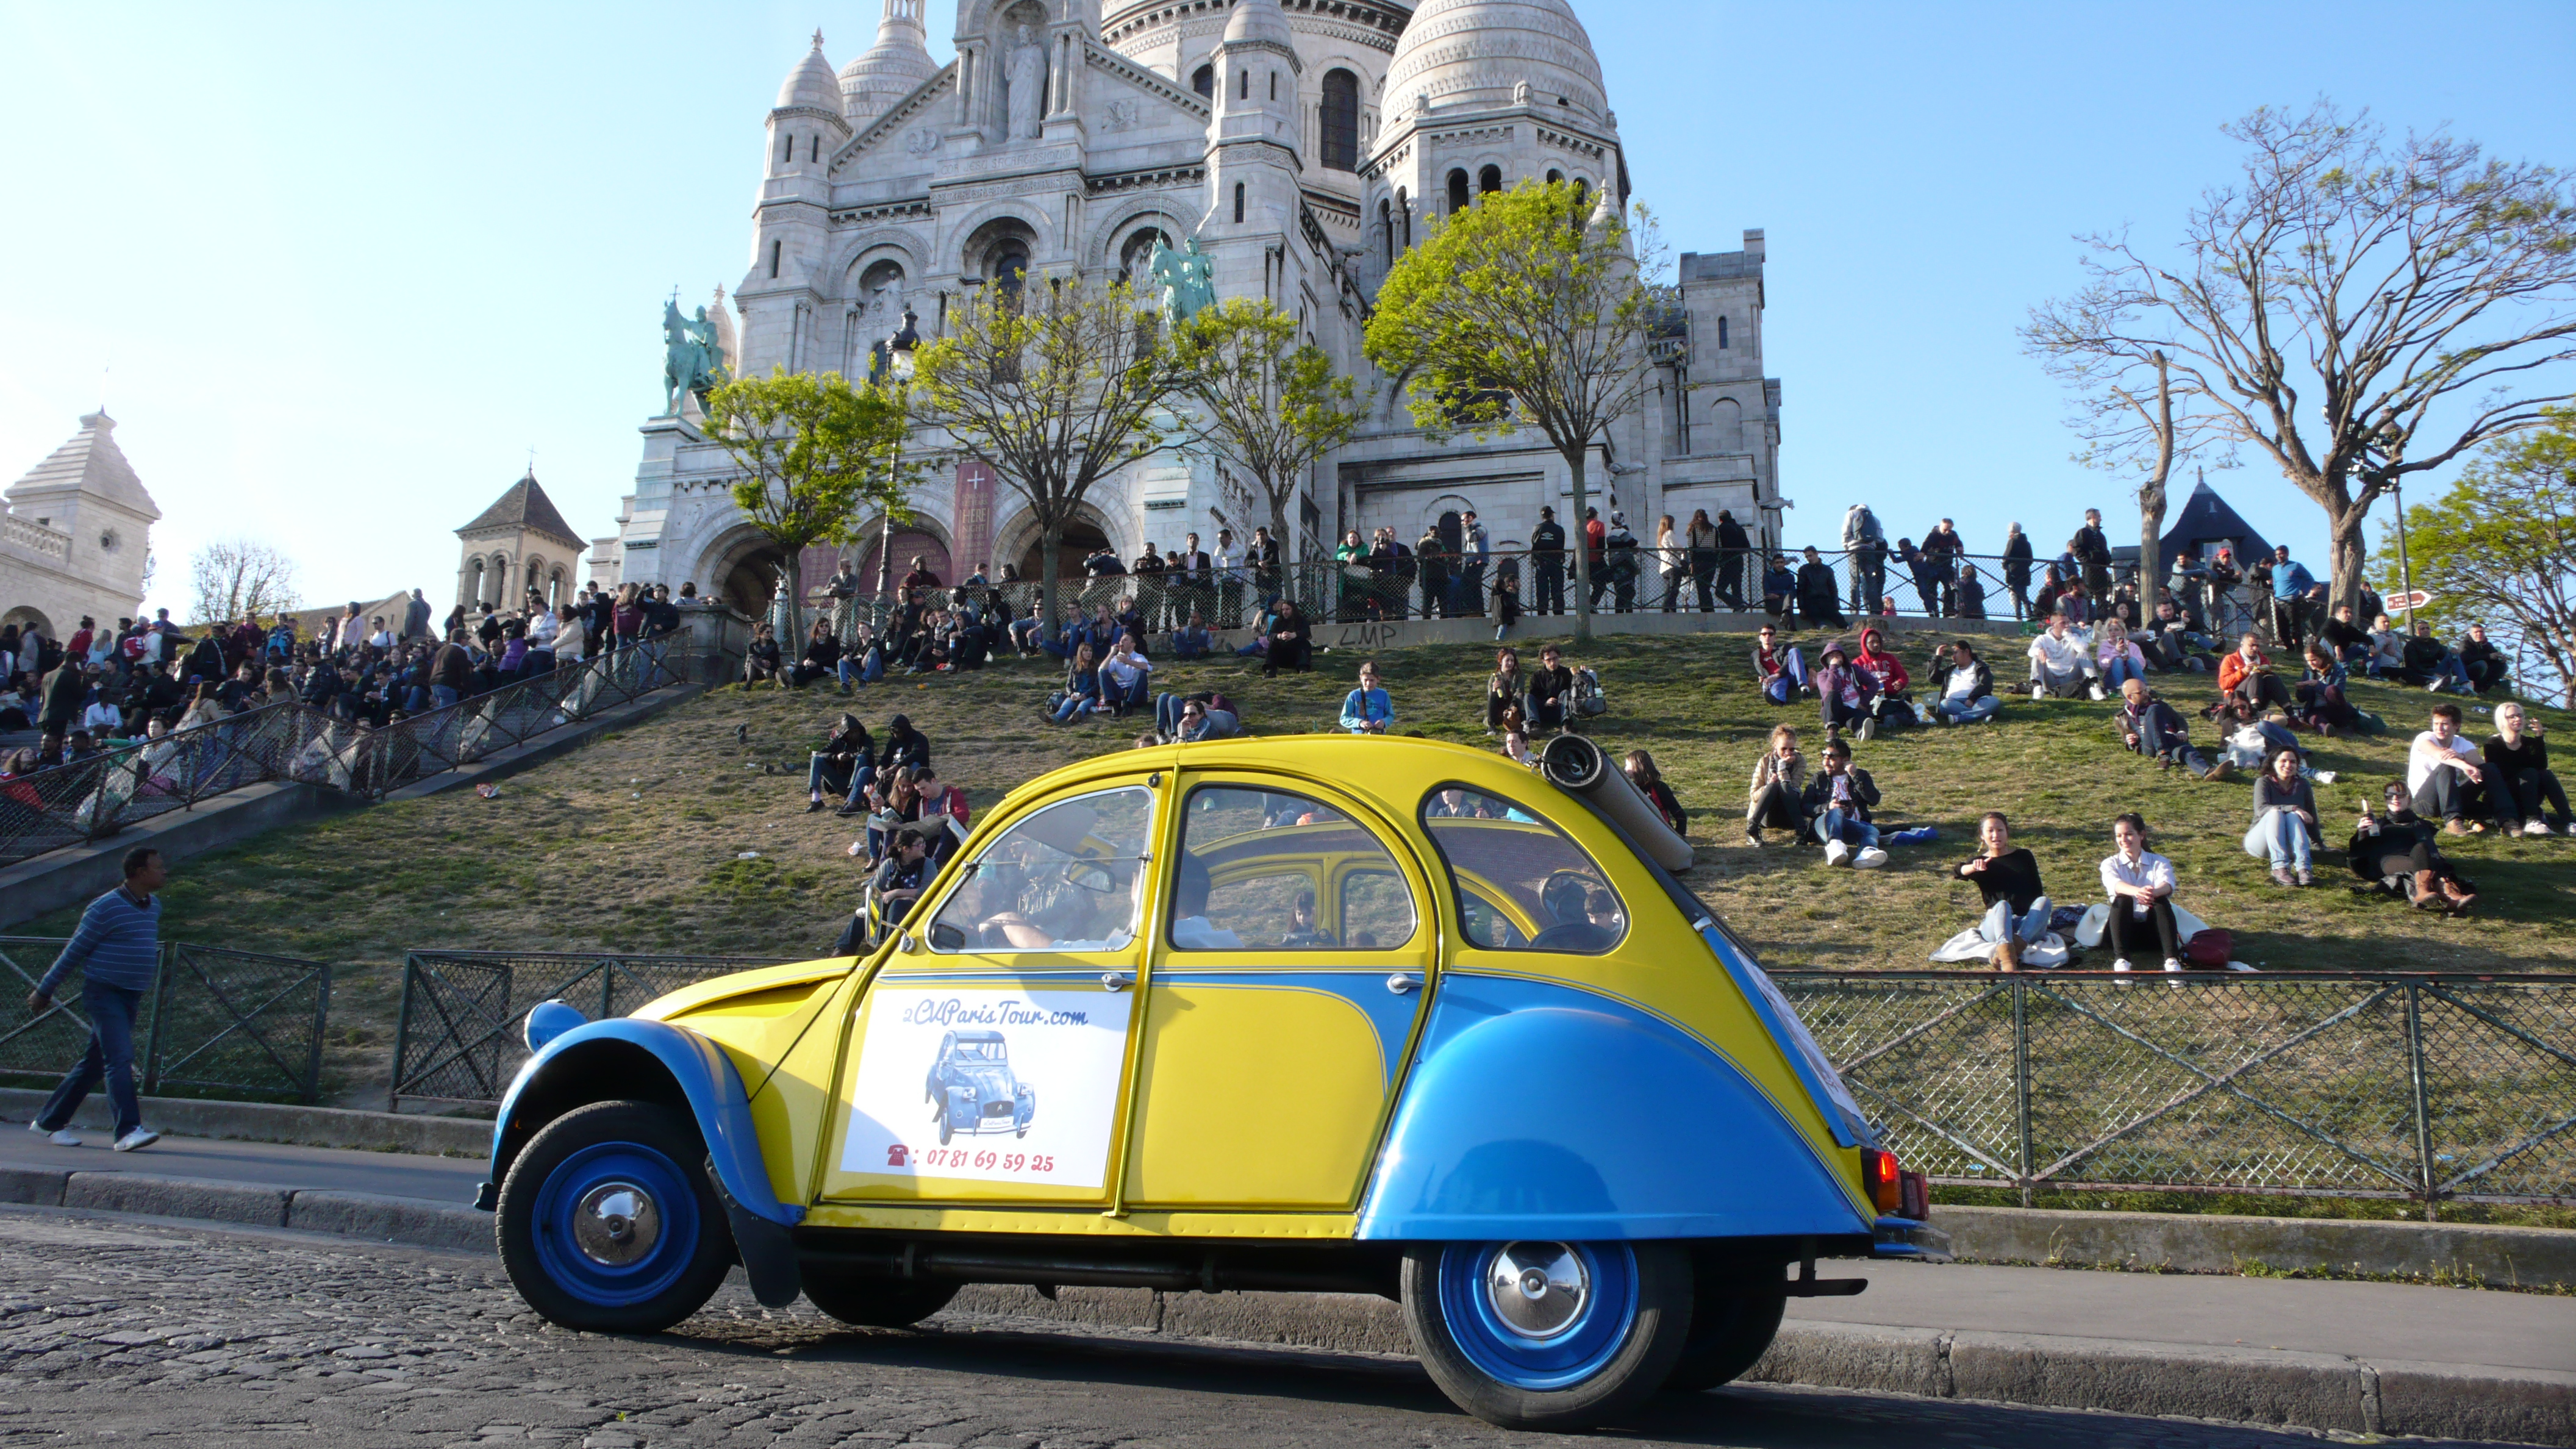 2CV Paris Tour : Visit Paris by 2CV! The Basilique of the Sacré Coeur